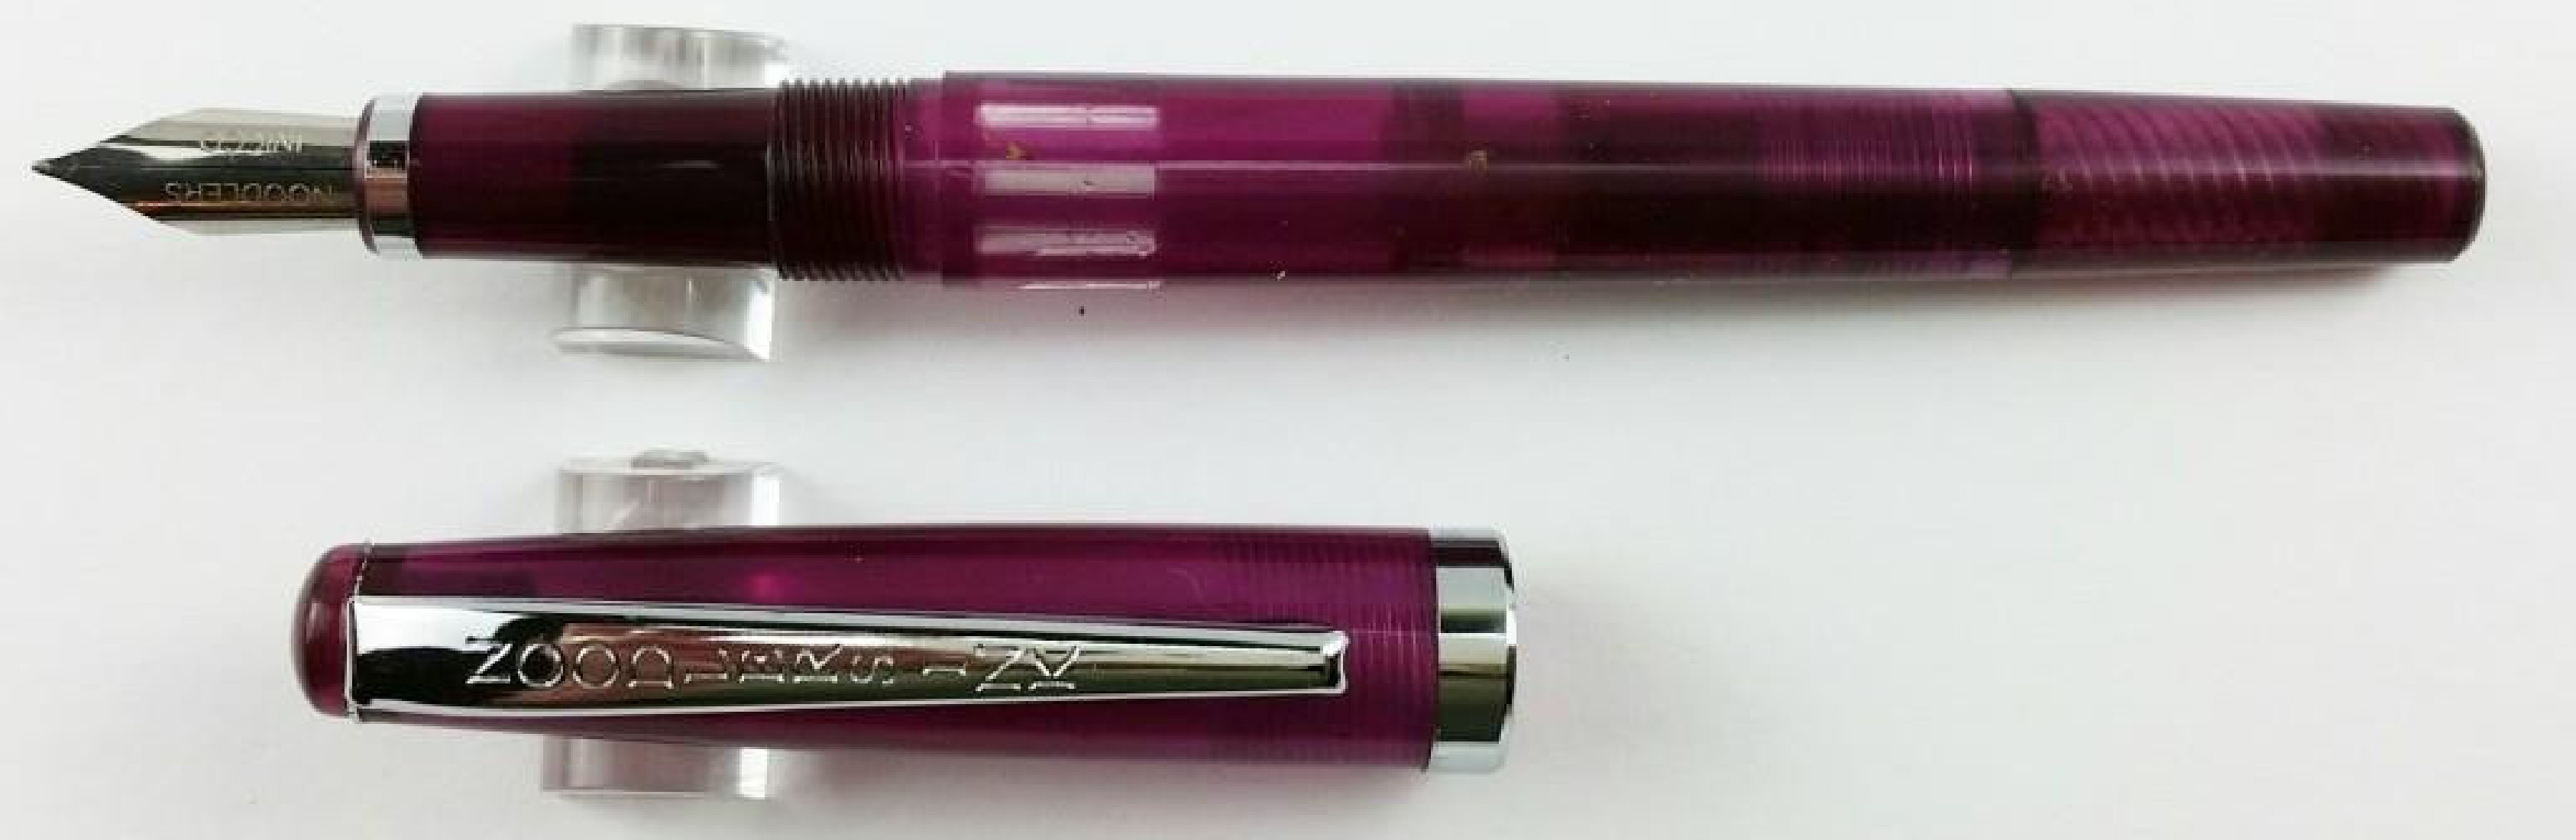 Noodlers Creaper King Philip Purple Standard Flex 17036  Fountain Pen